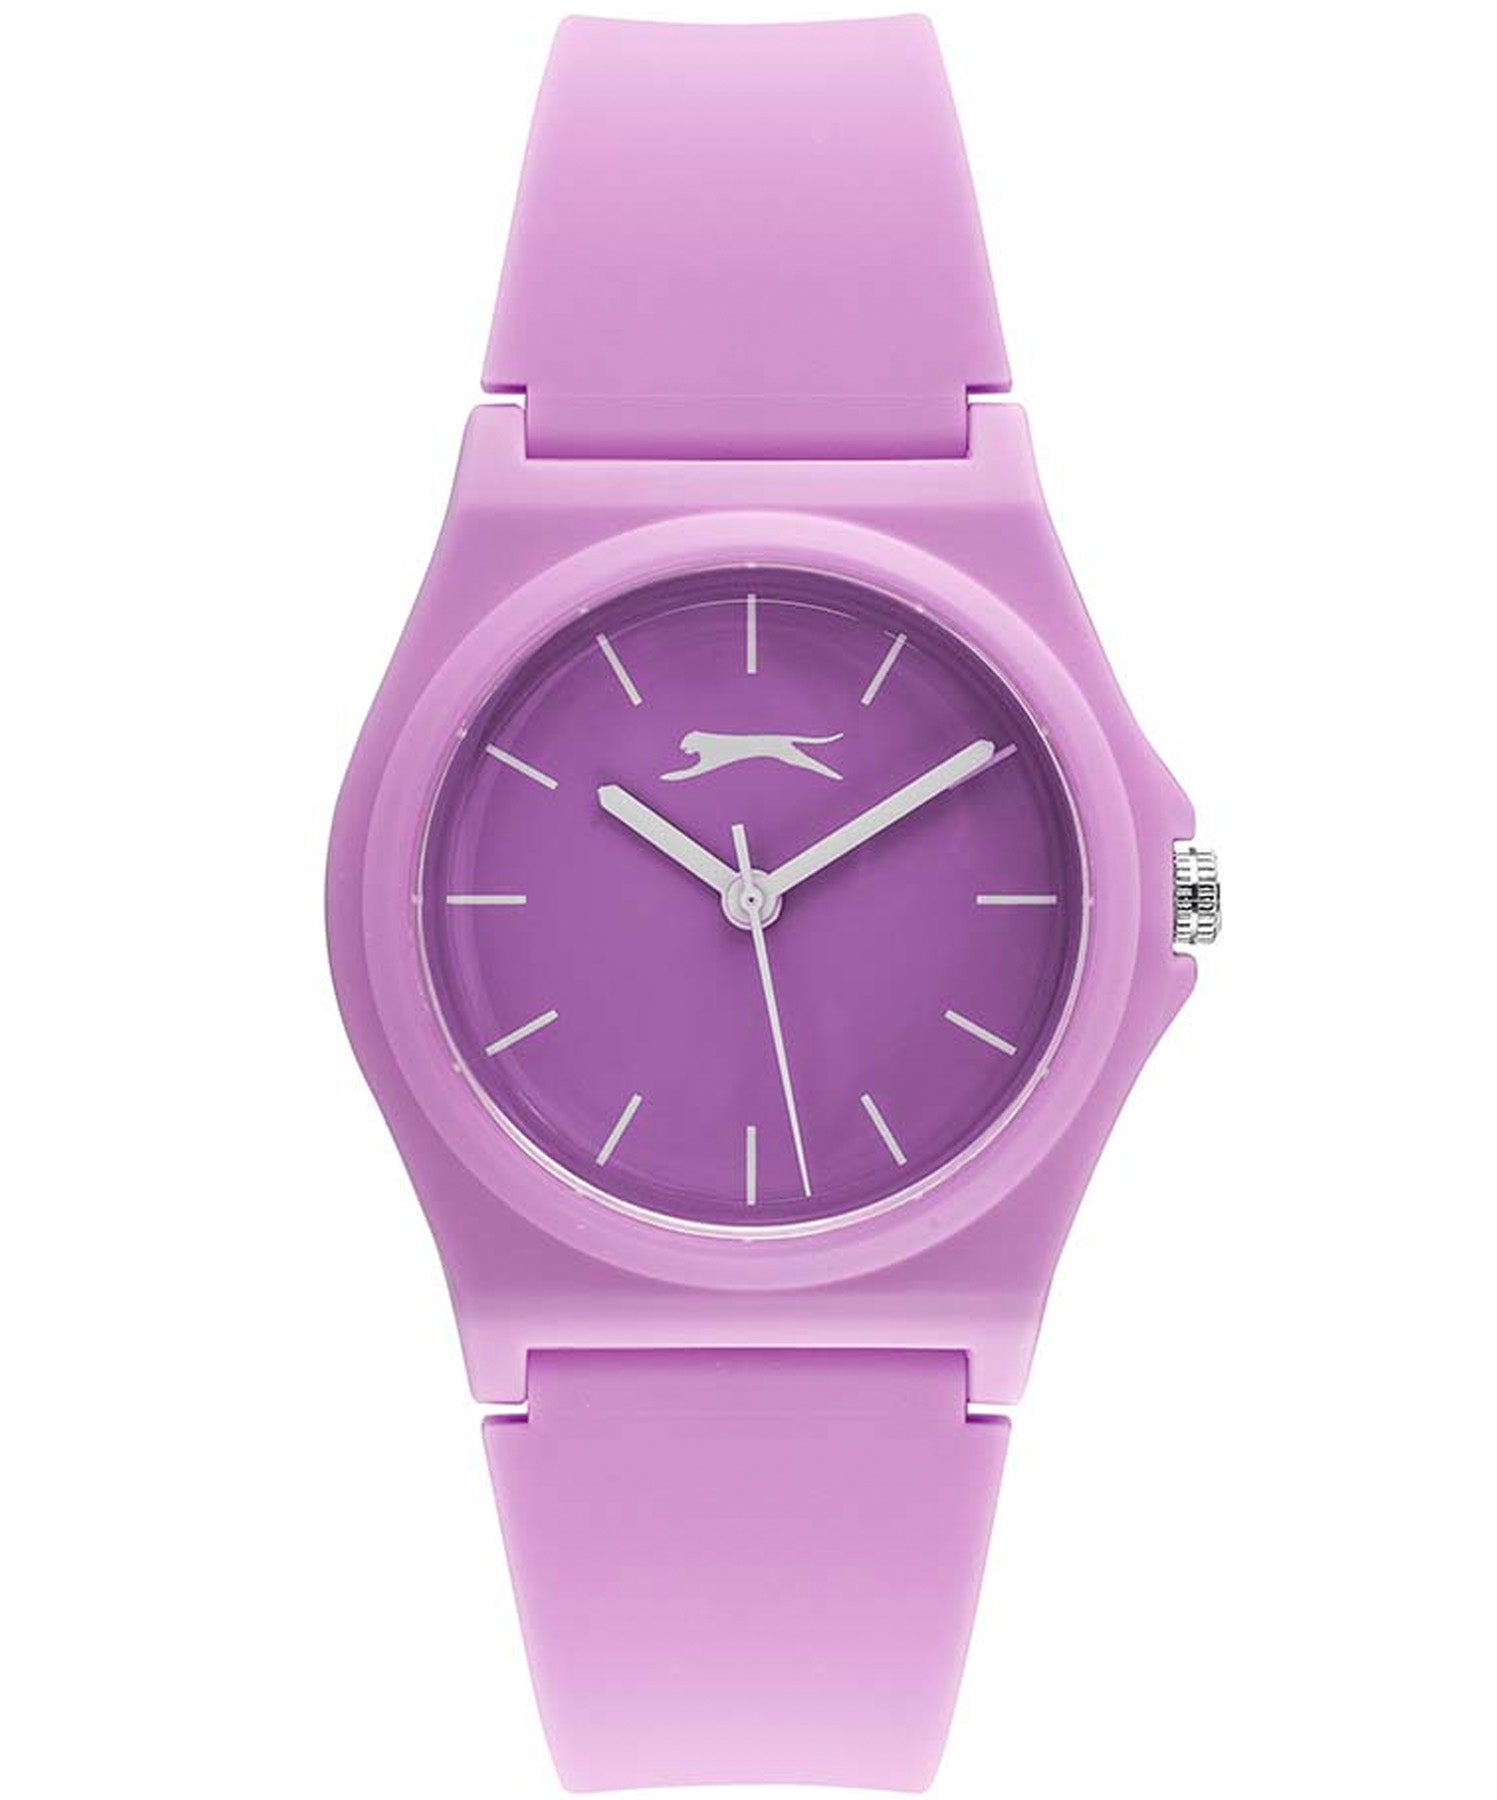 Slazenger Sport Women's Watch Purple dial Purple Silicone Strap, SL.09.6571.3.02